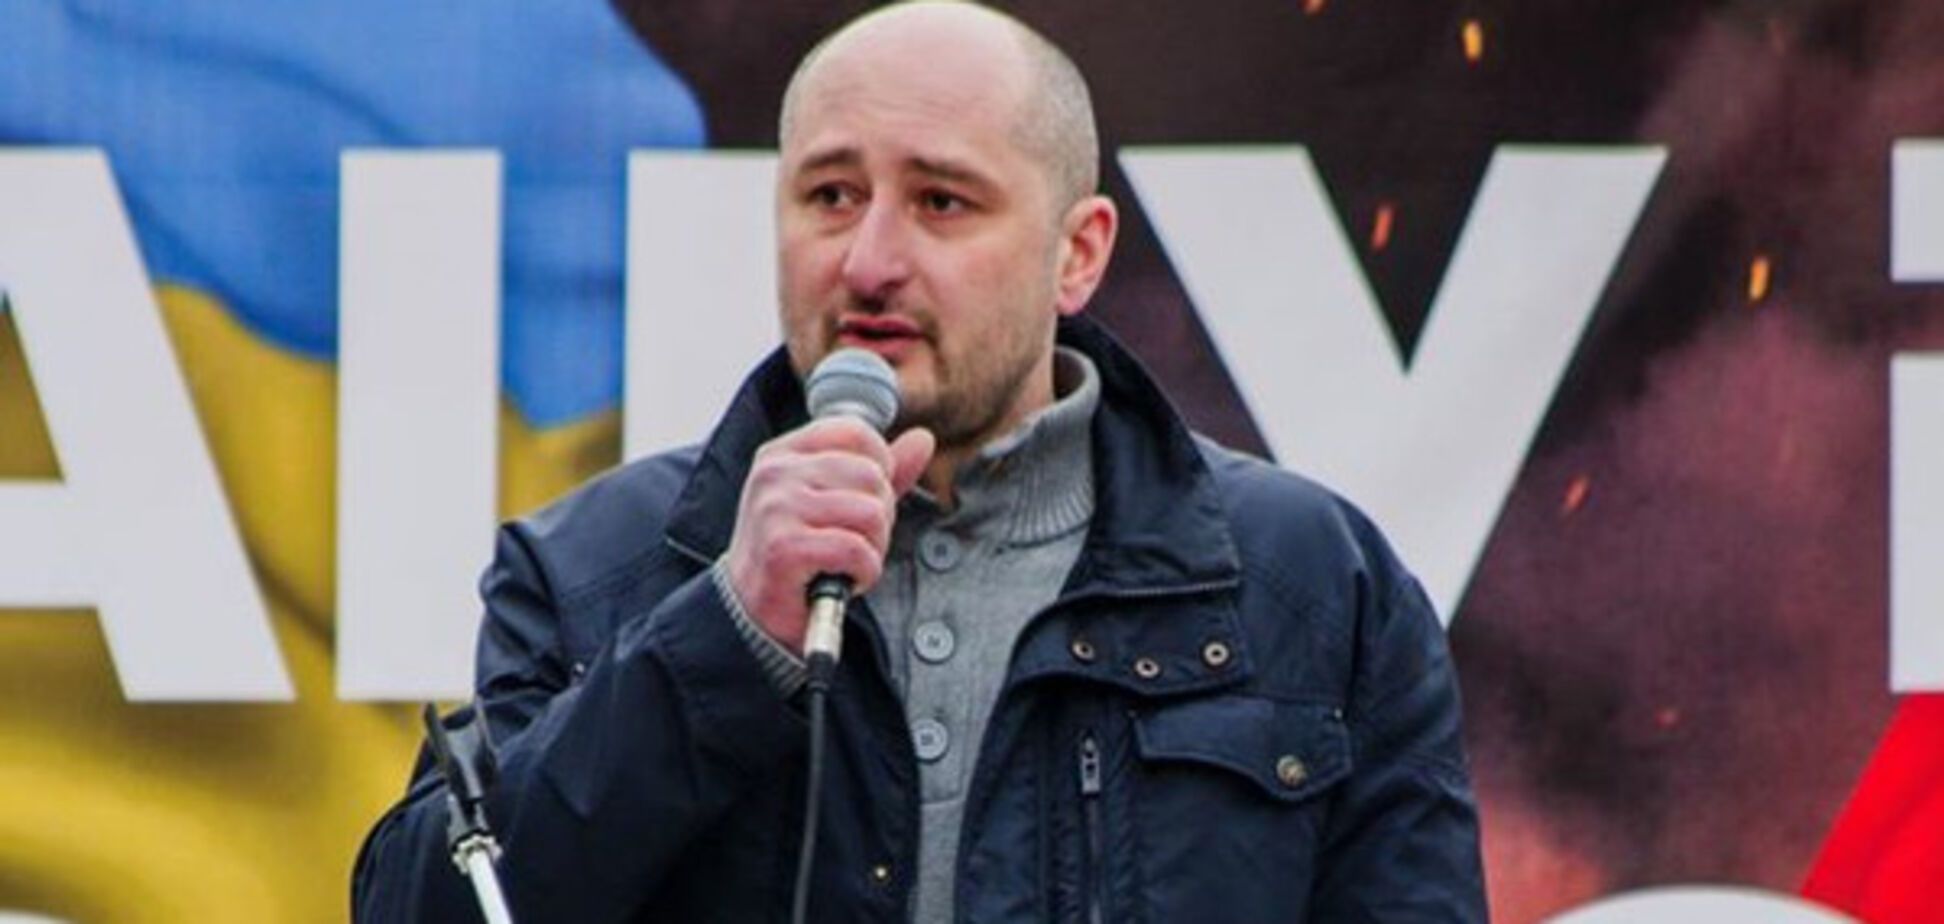 Аркадій Бабченко